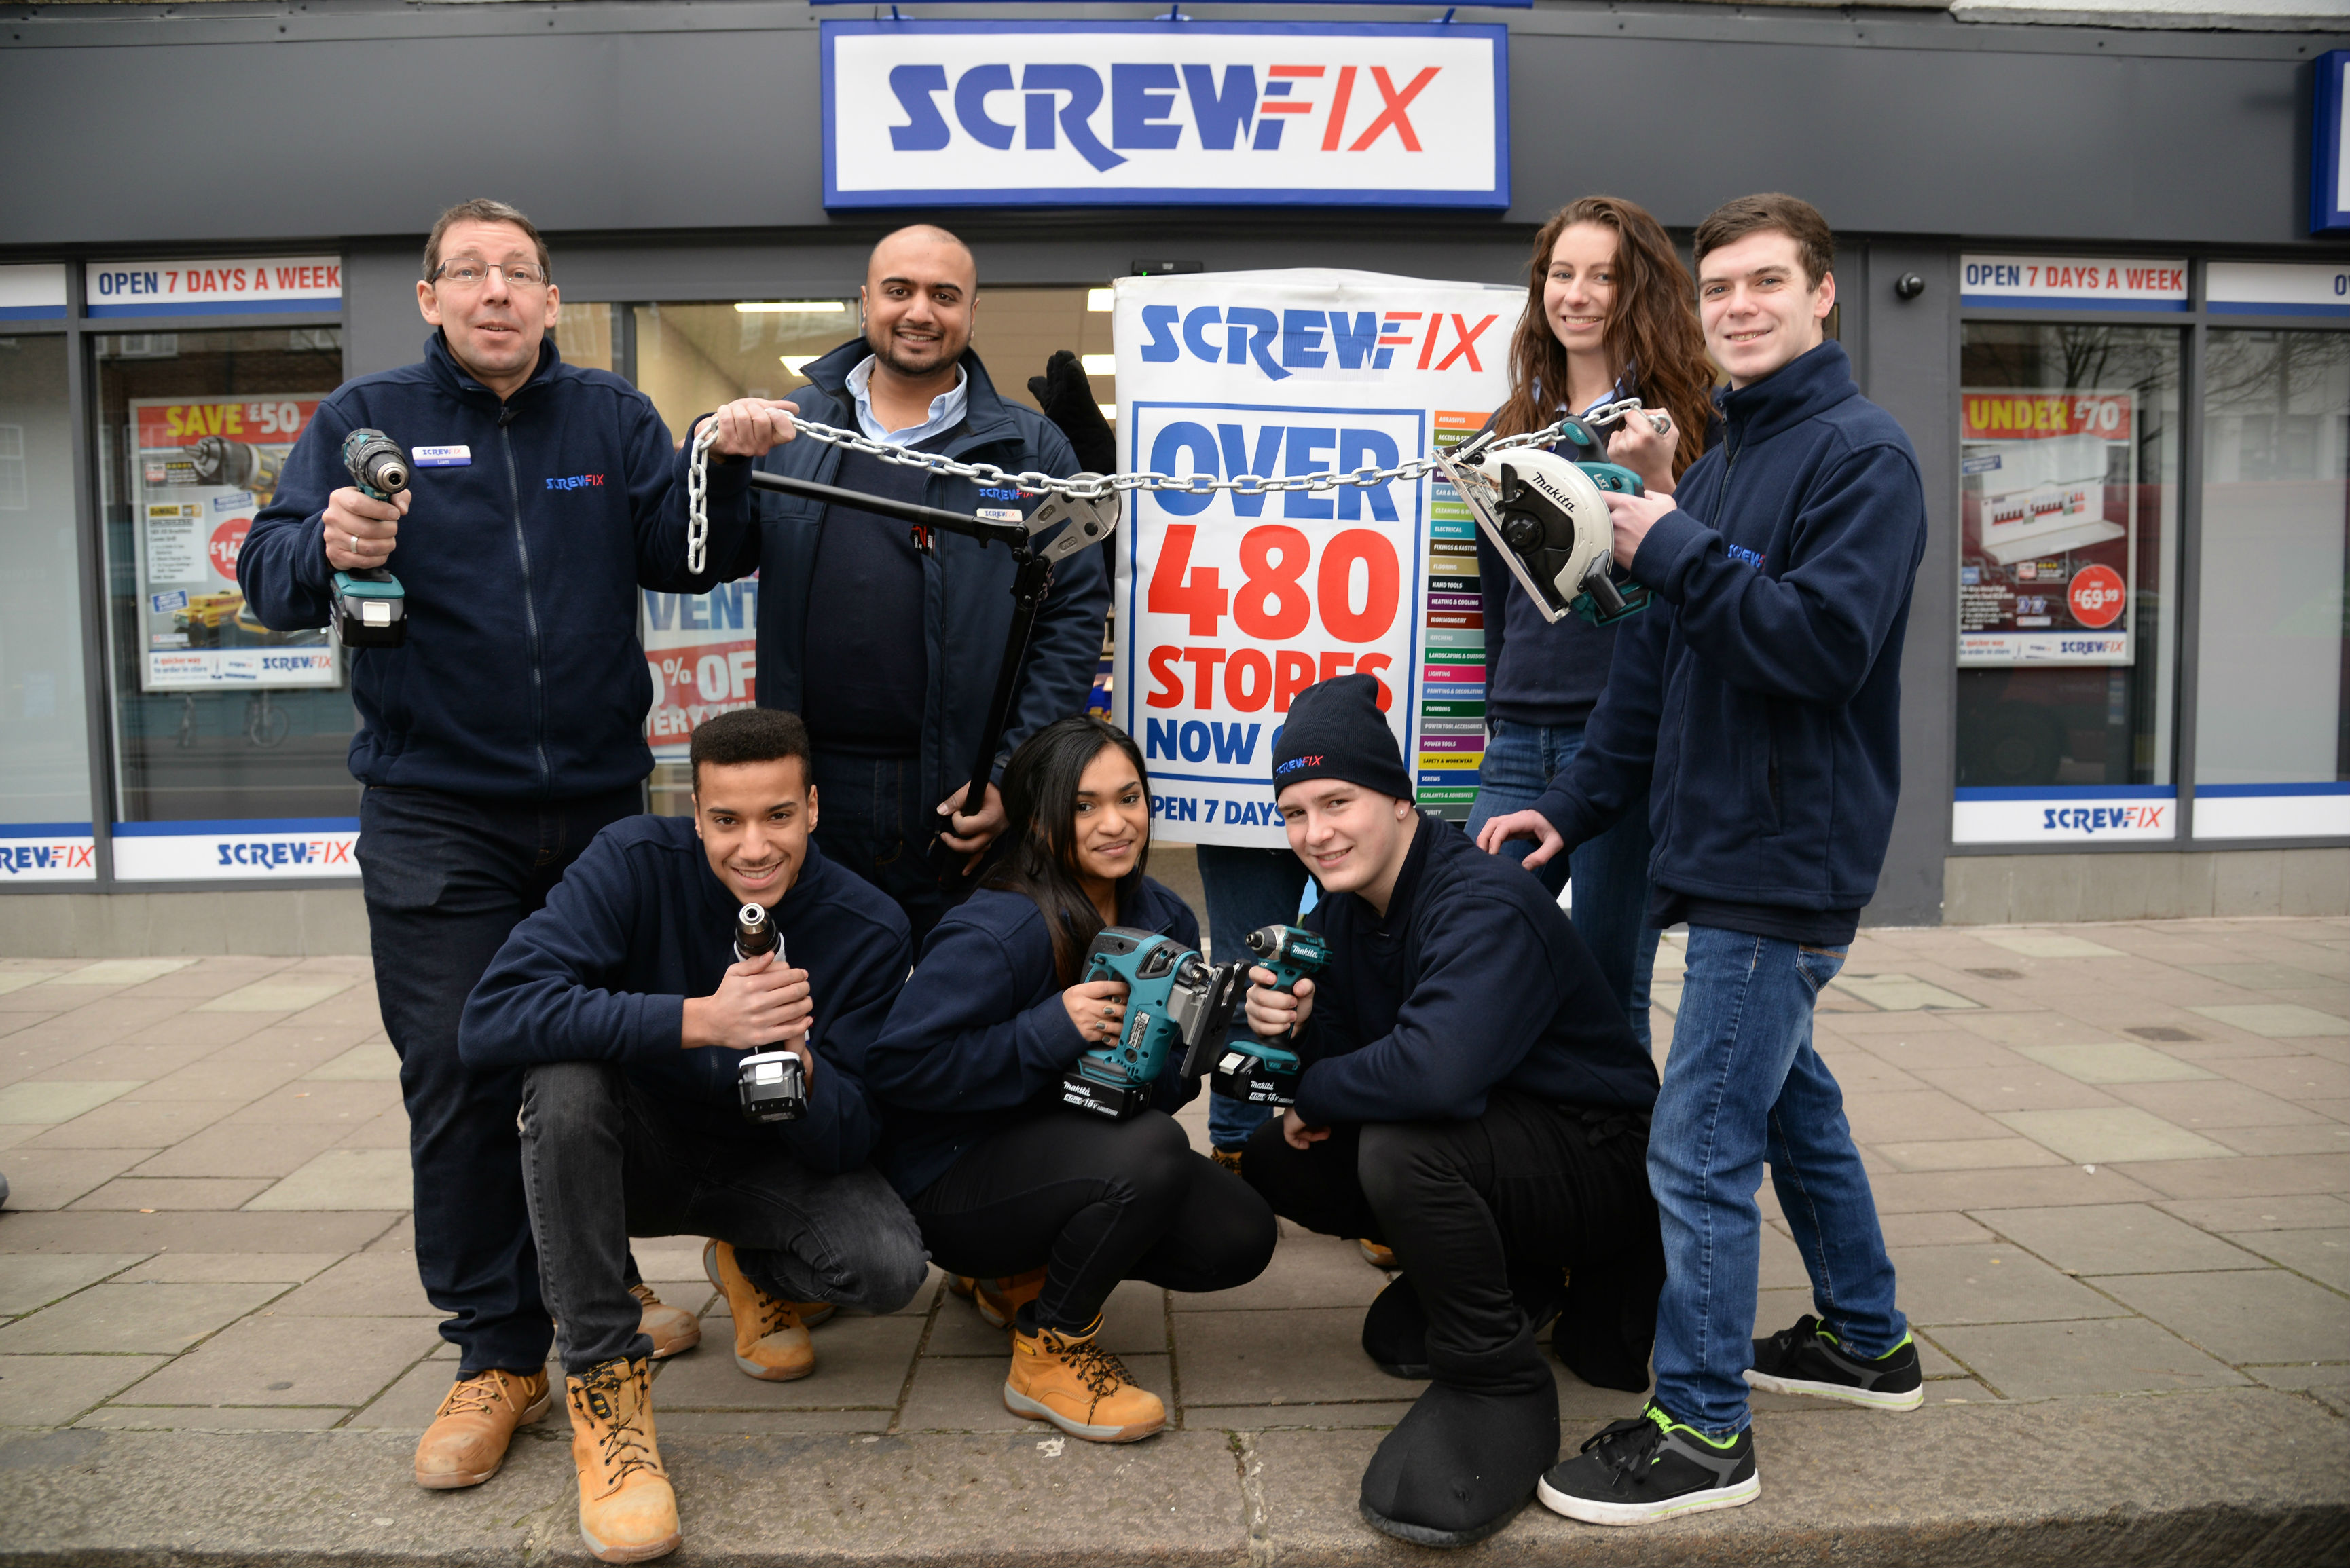 Screwfix opens its doors in Twickenham